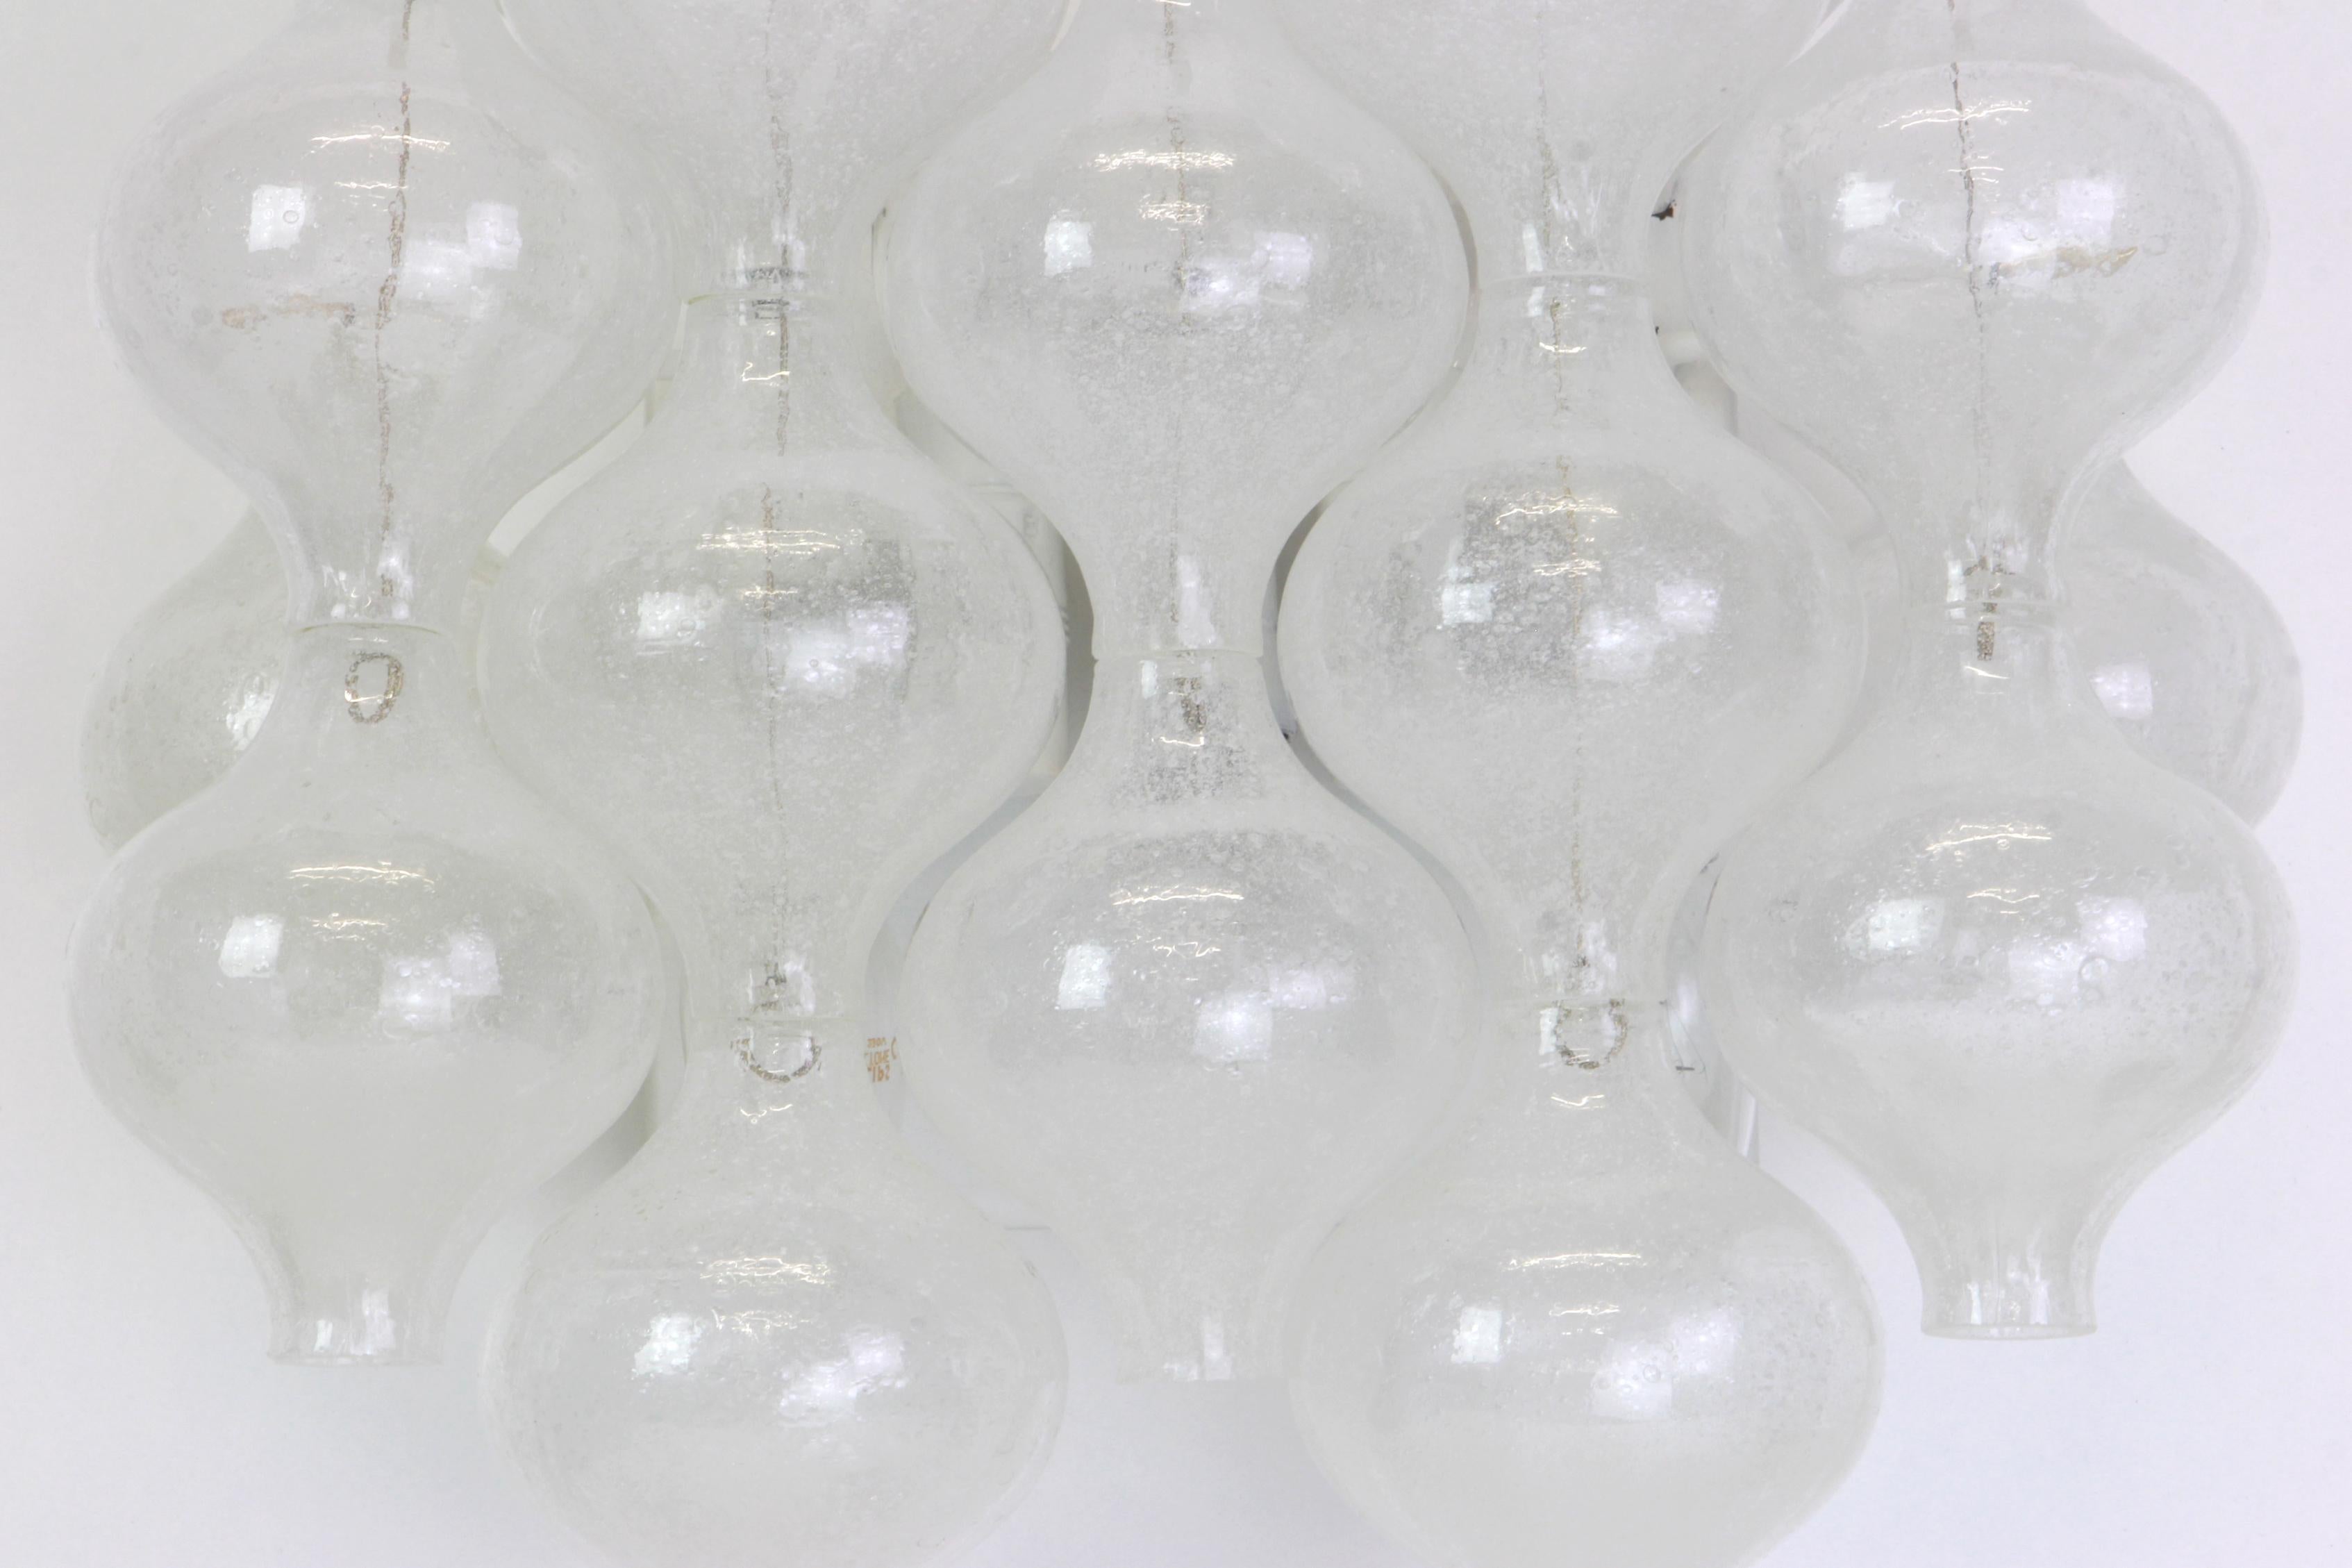 Wunderschönes Paar Wandleuchter aus der Mitte des Jahrhunderts, hergestellt von Kalmar, Österreich, ca. 1970-1979.
Jedes tulpenförmige Glas ist handgefertigt, was jedes Glas zu einem Einzelstück macht. Jede Leuchte besteht aus 14 Glasstücken auf